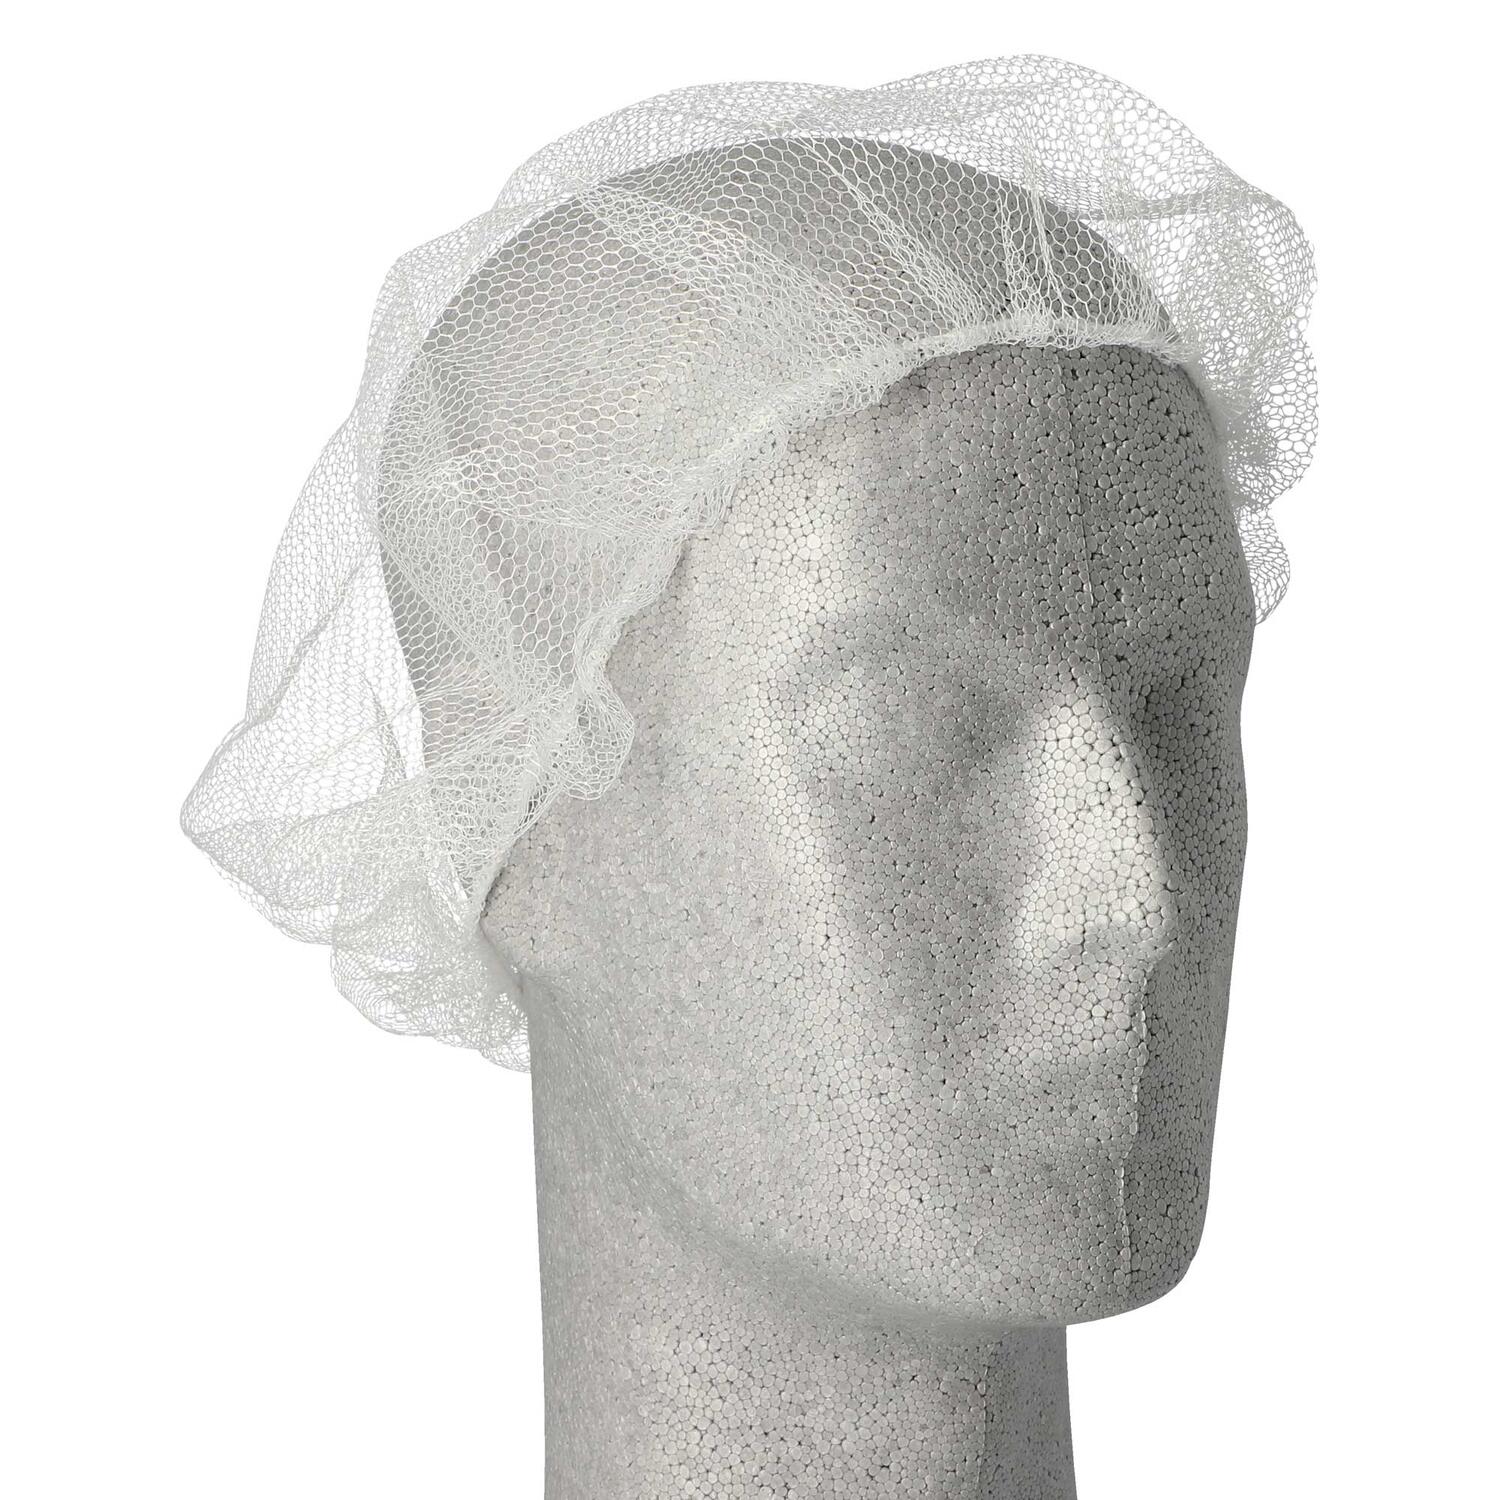 Haarnetze Kopfhauben dezente Haarfixierung aus Nylon  55-62 cm weiss, 100 Stk.